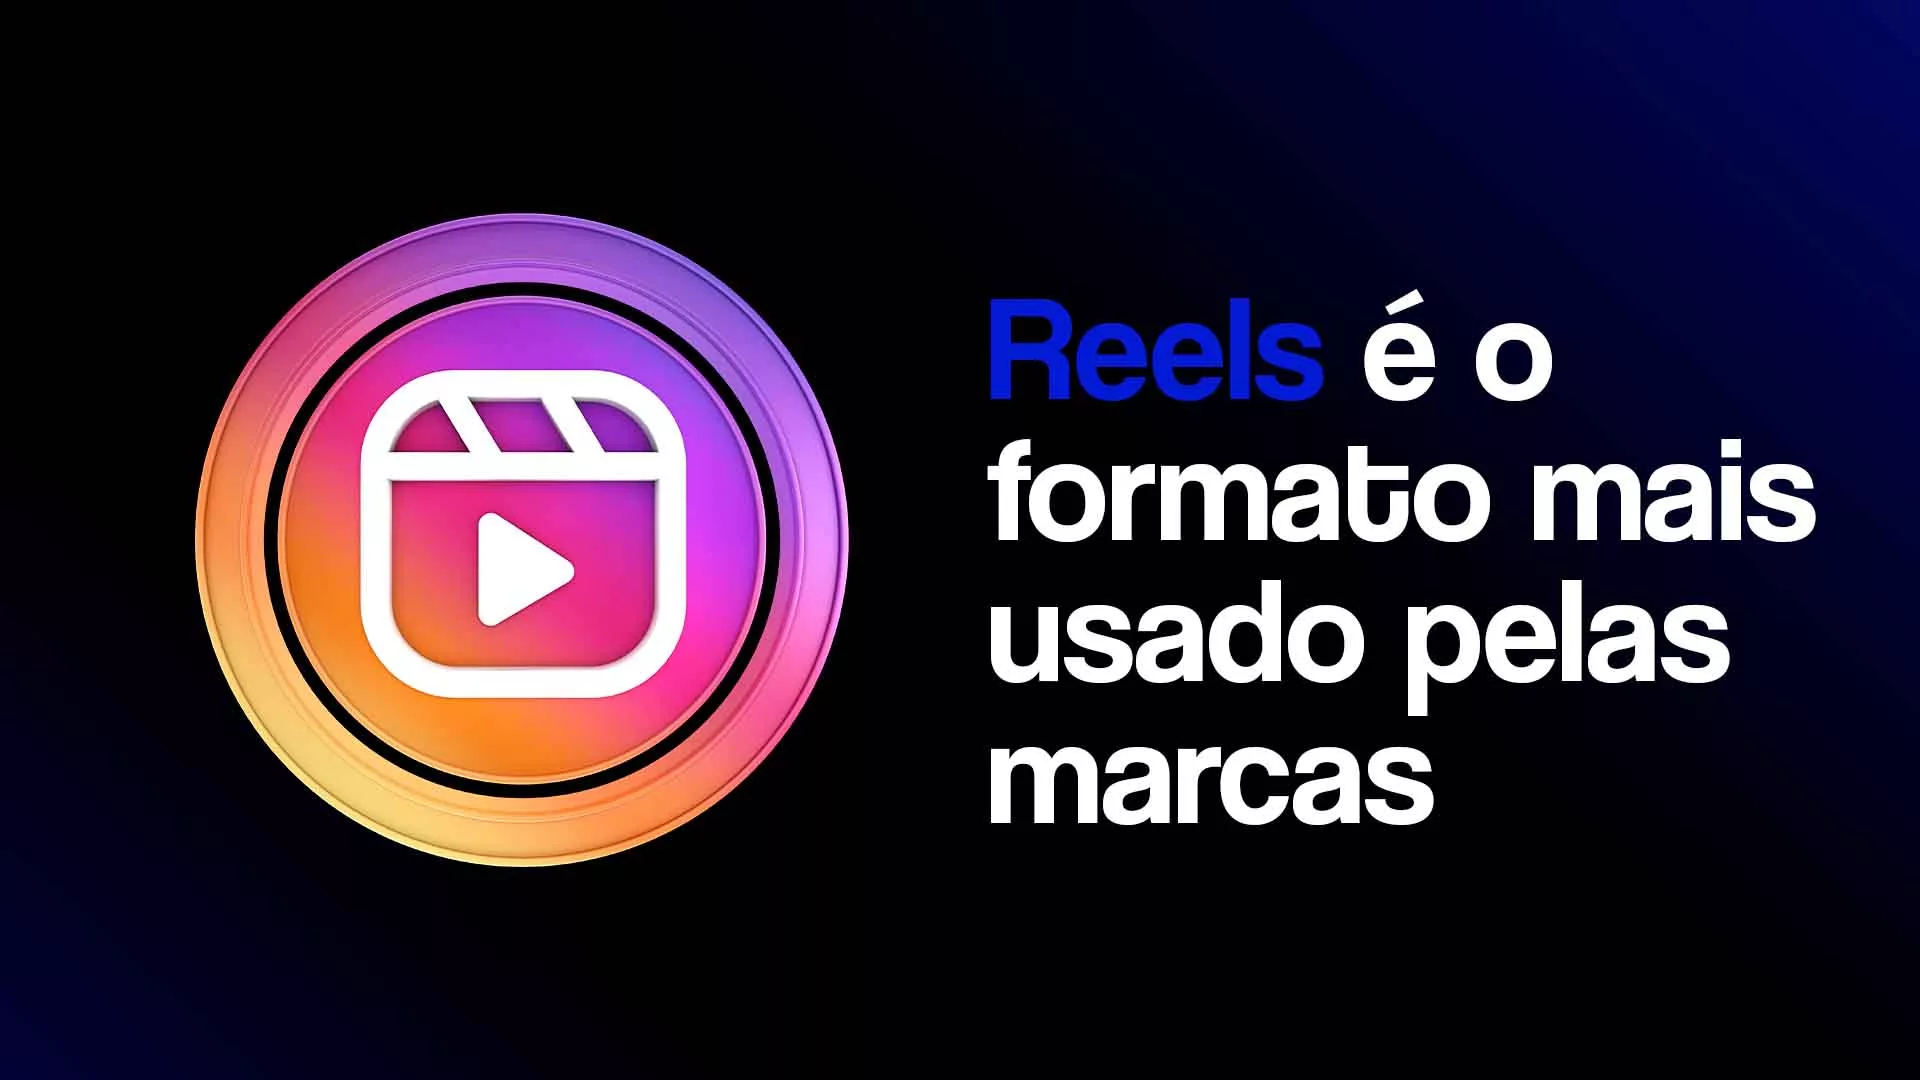 Foto com ícone do reels com título "Reels é o formato mais usado pelas marcas"